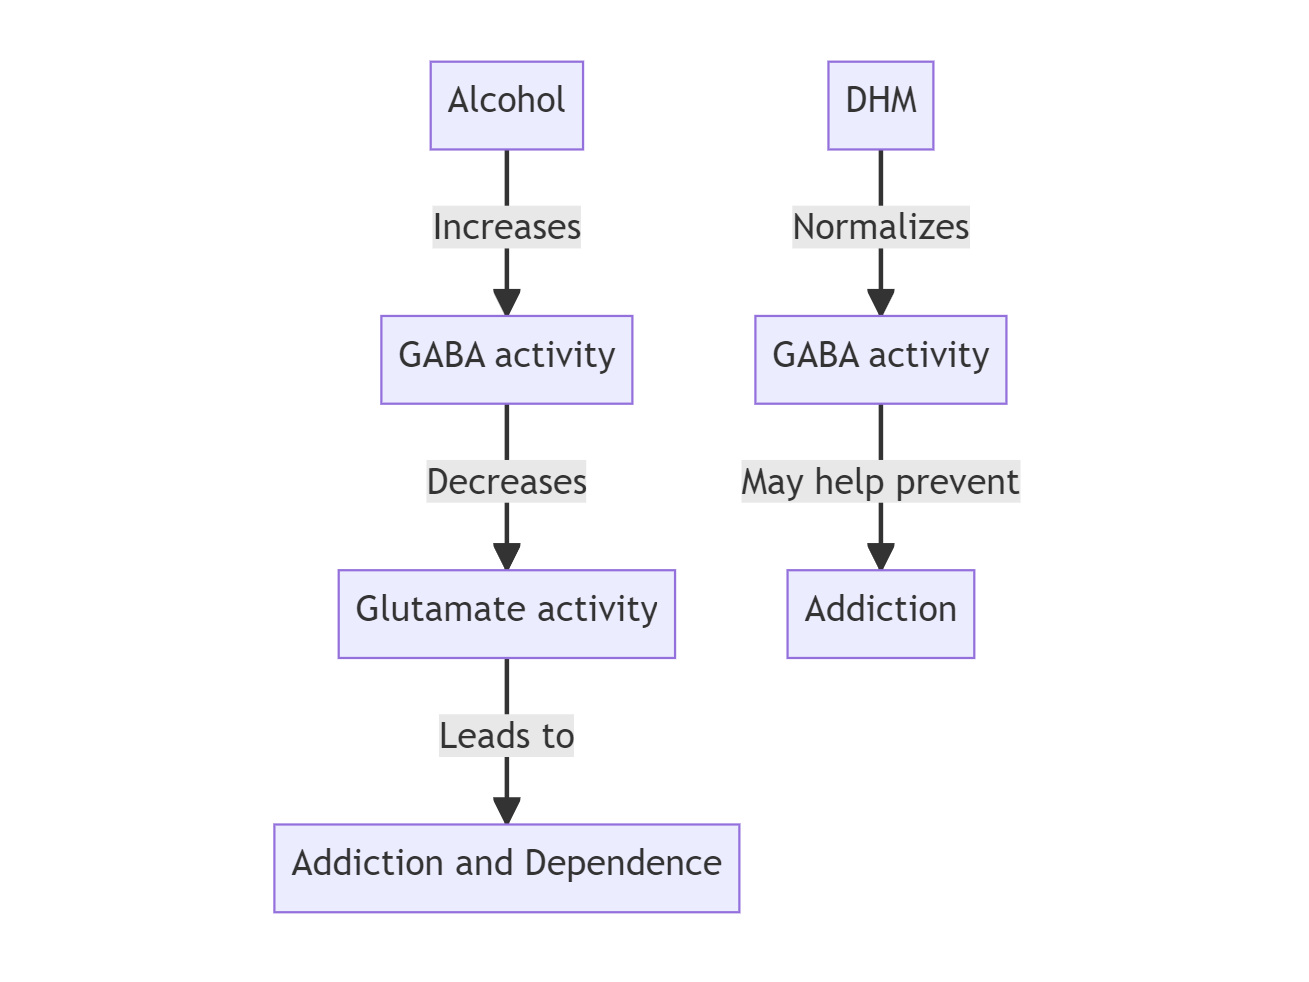 DHM normalizes alcohol-induced neurotransmitter imbalance underlying addiction.